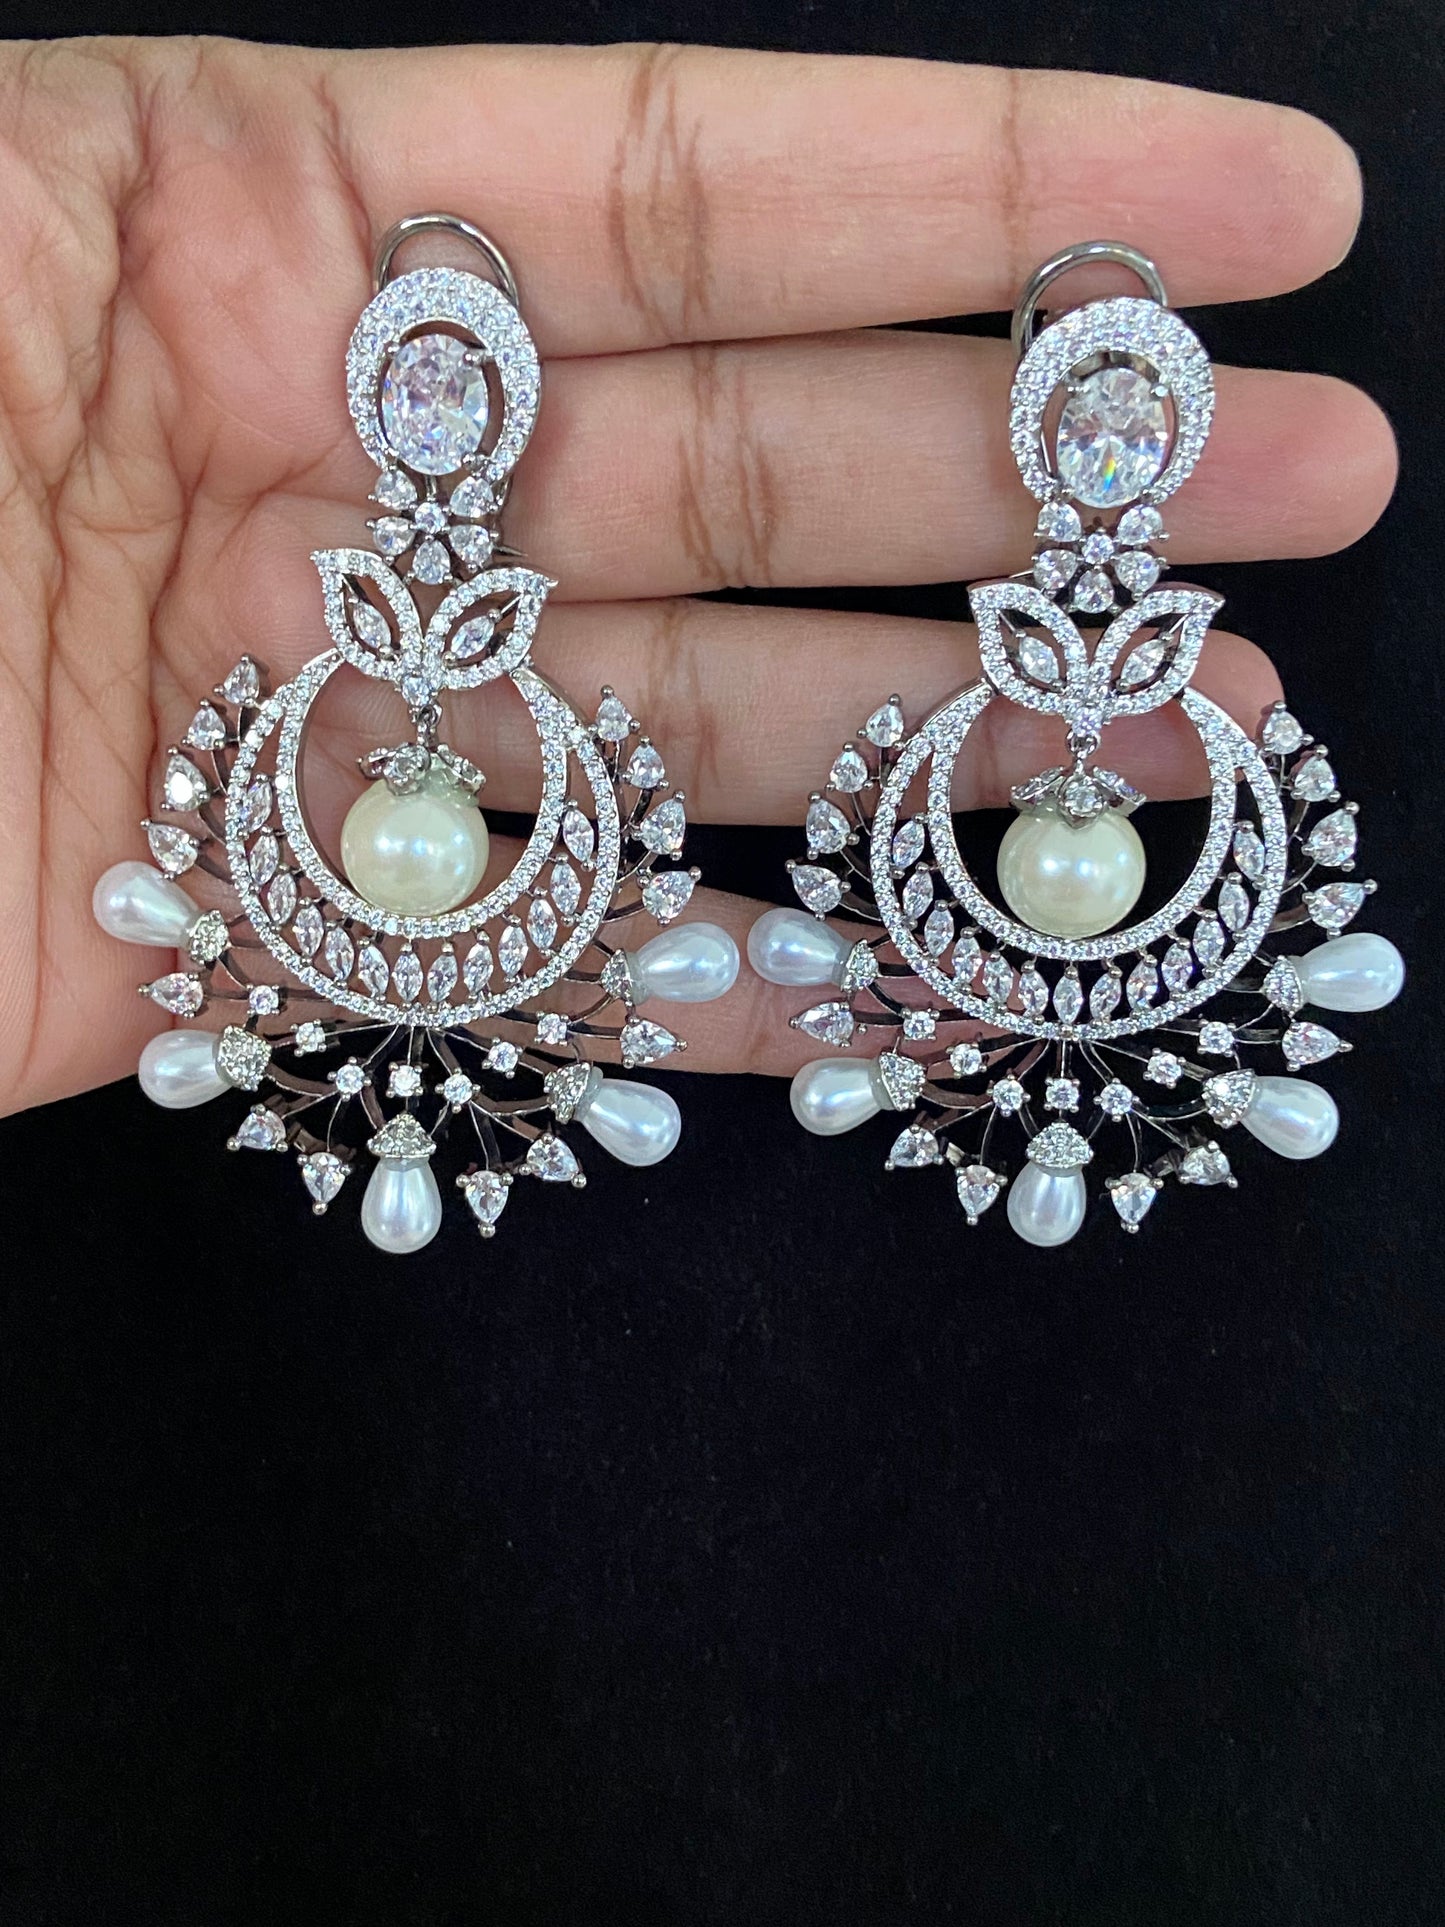 Victorian chandbali earrings | Party wear earrings